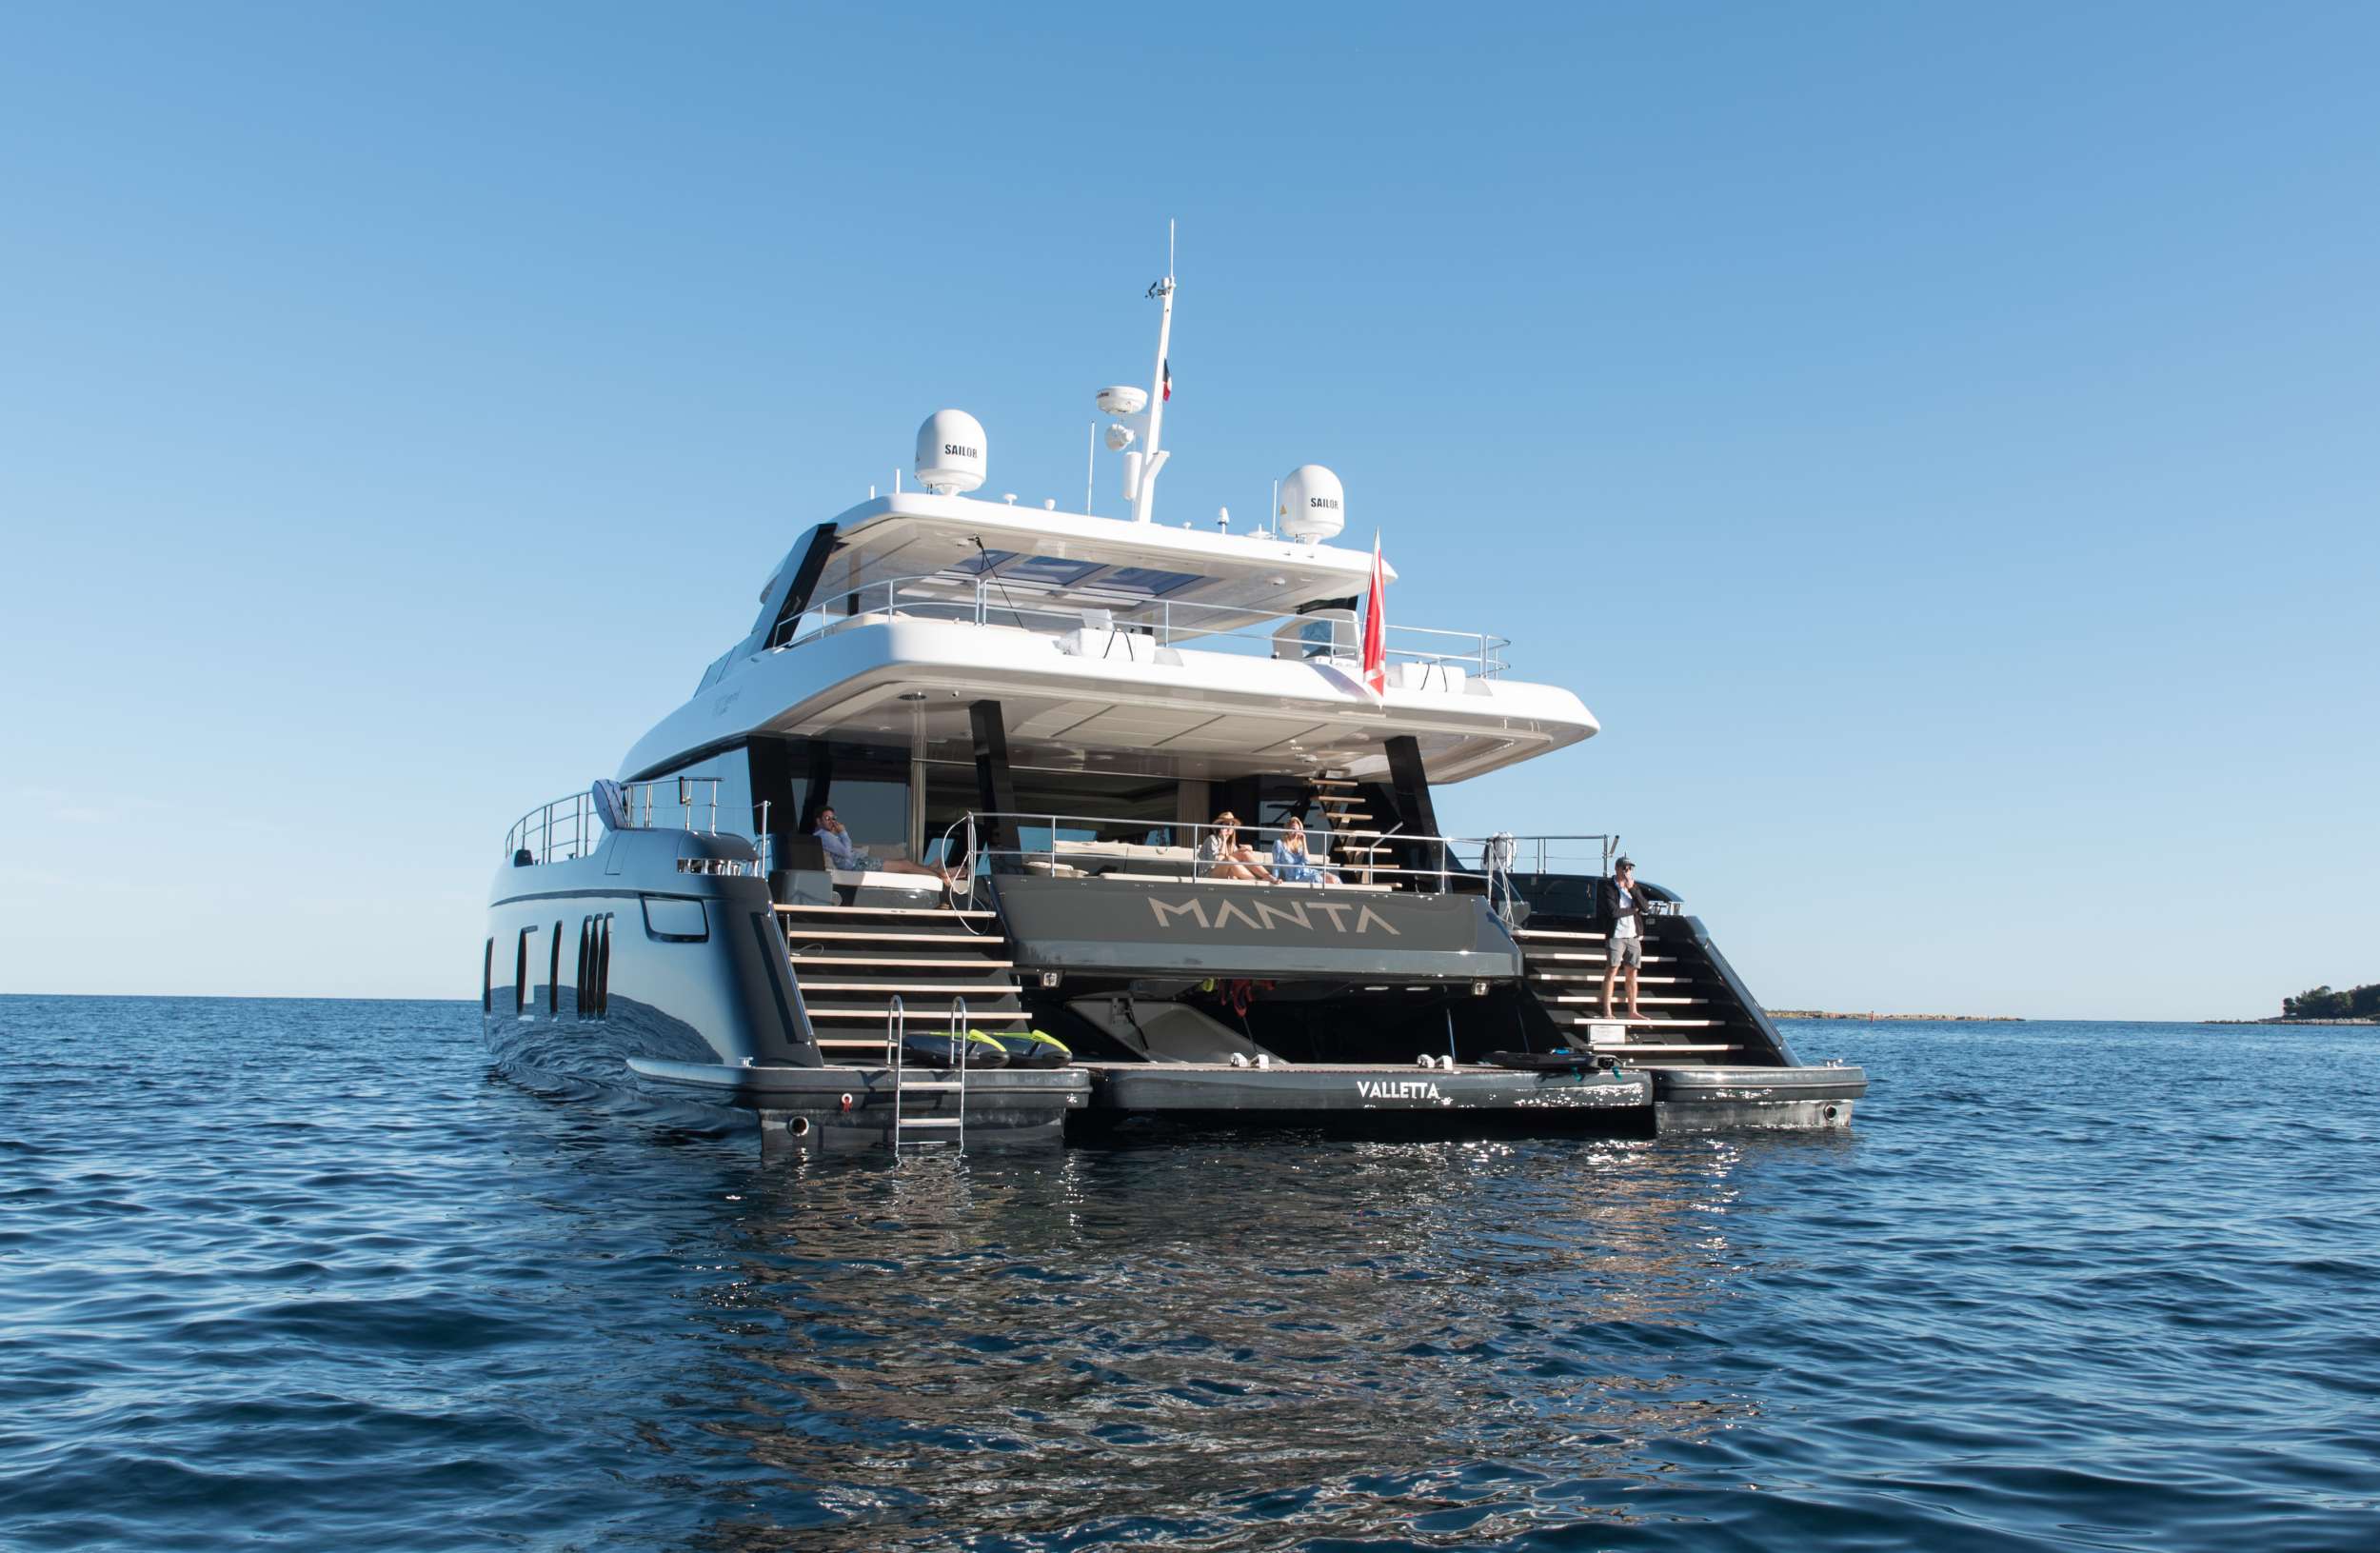 MANTA - Superyacht charter Balearics & Boat hire in Riviera, Cors, Sard, Italy, Spain, Turkey, Croatia, Greece 1